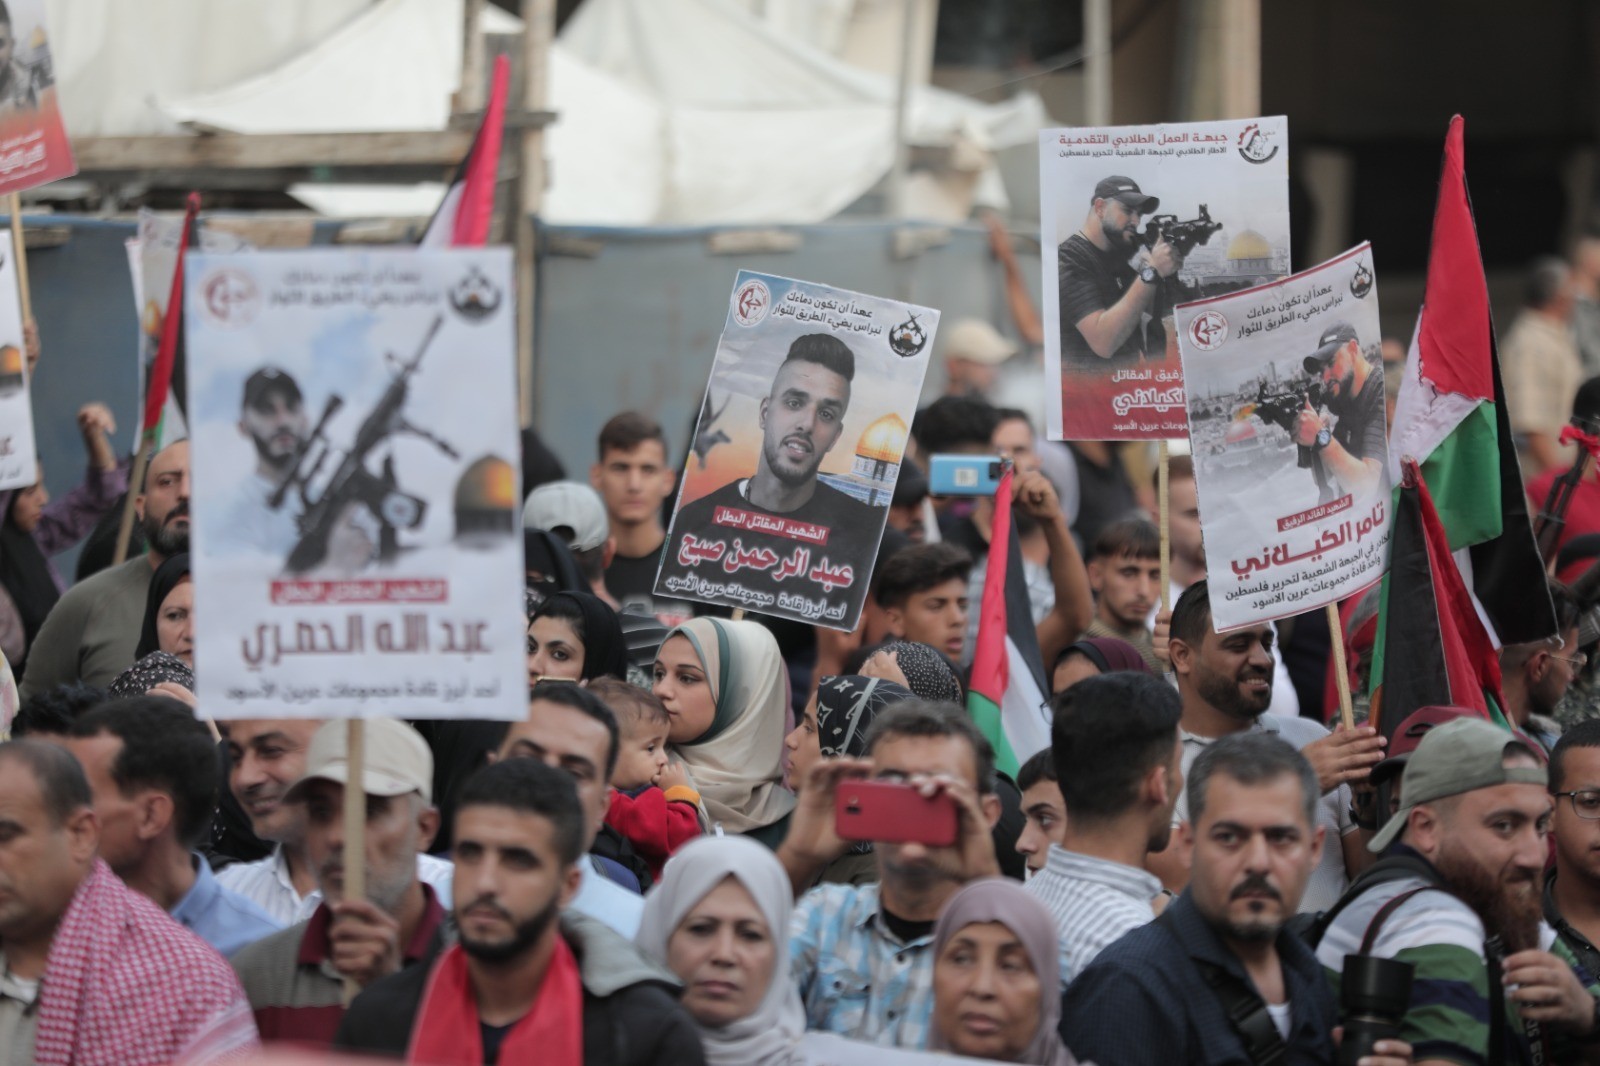 الشعبيّة في غزّة تنظّم جنازة عسكرية ومسيرة غضب وفاءً لرفيقها المقاتل تامر الكيلاني 8.jpeg